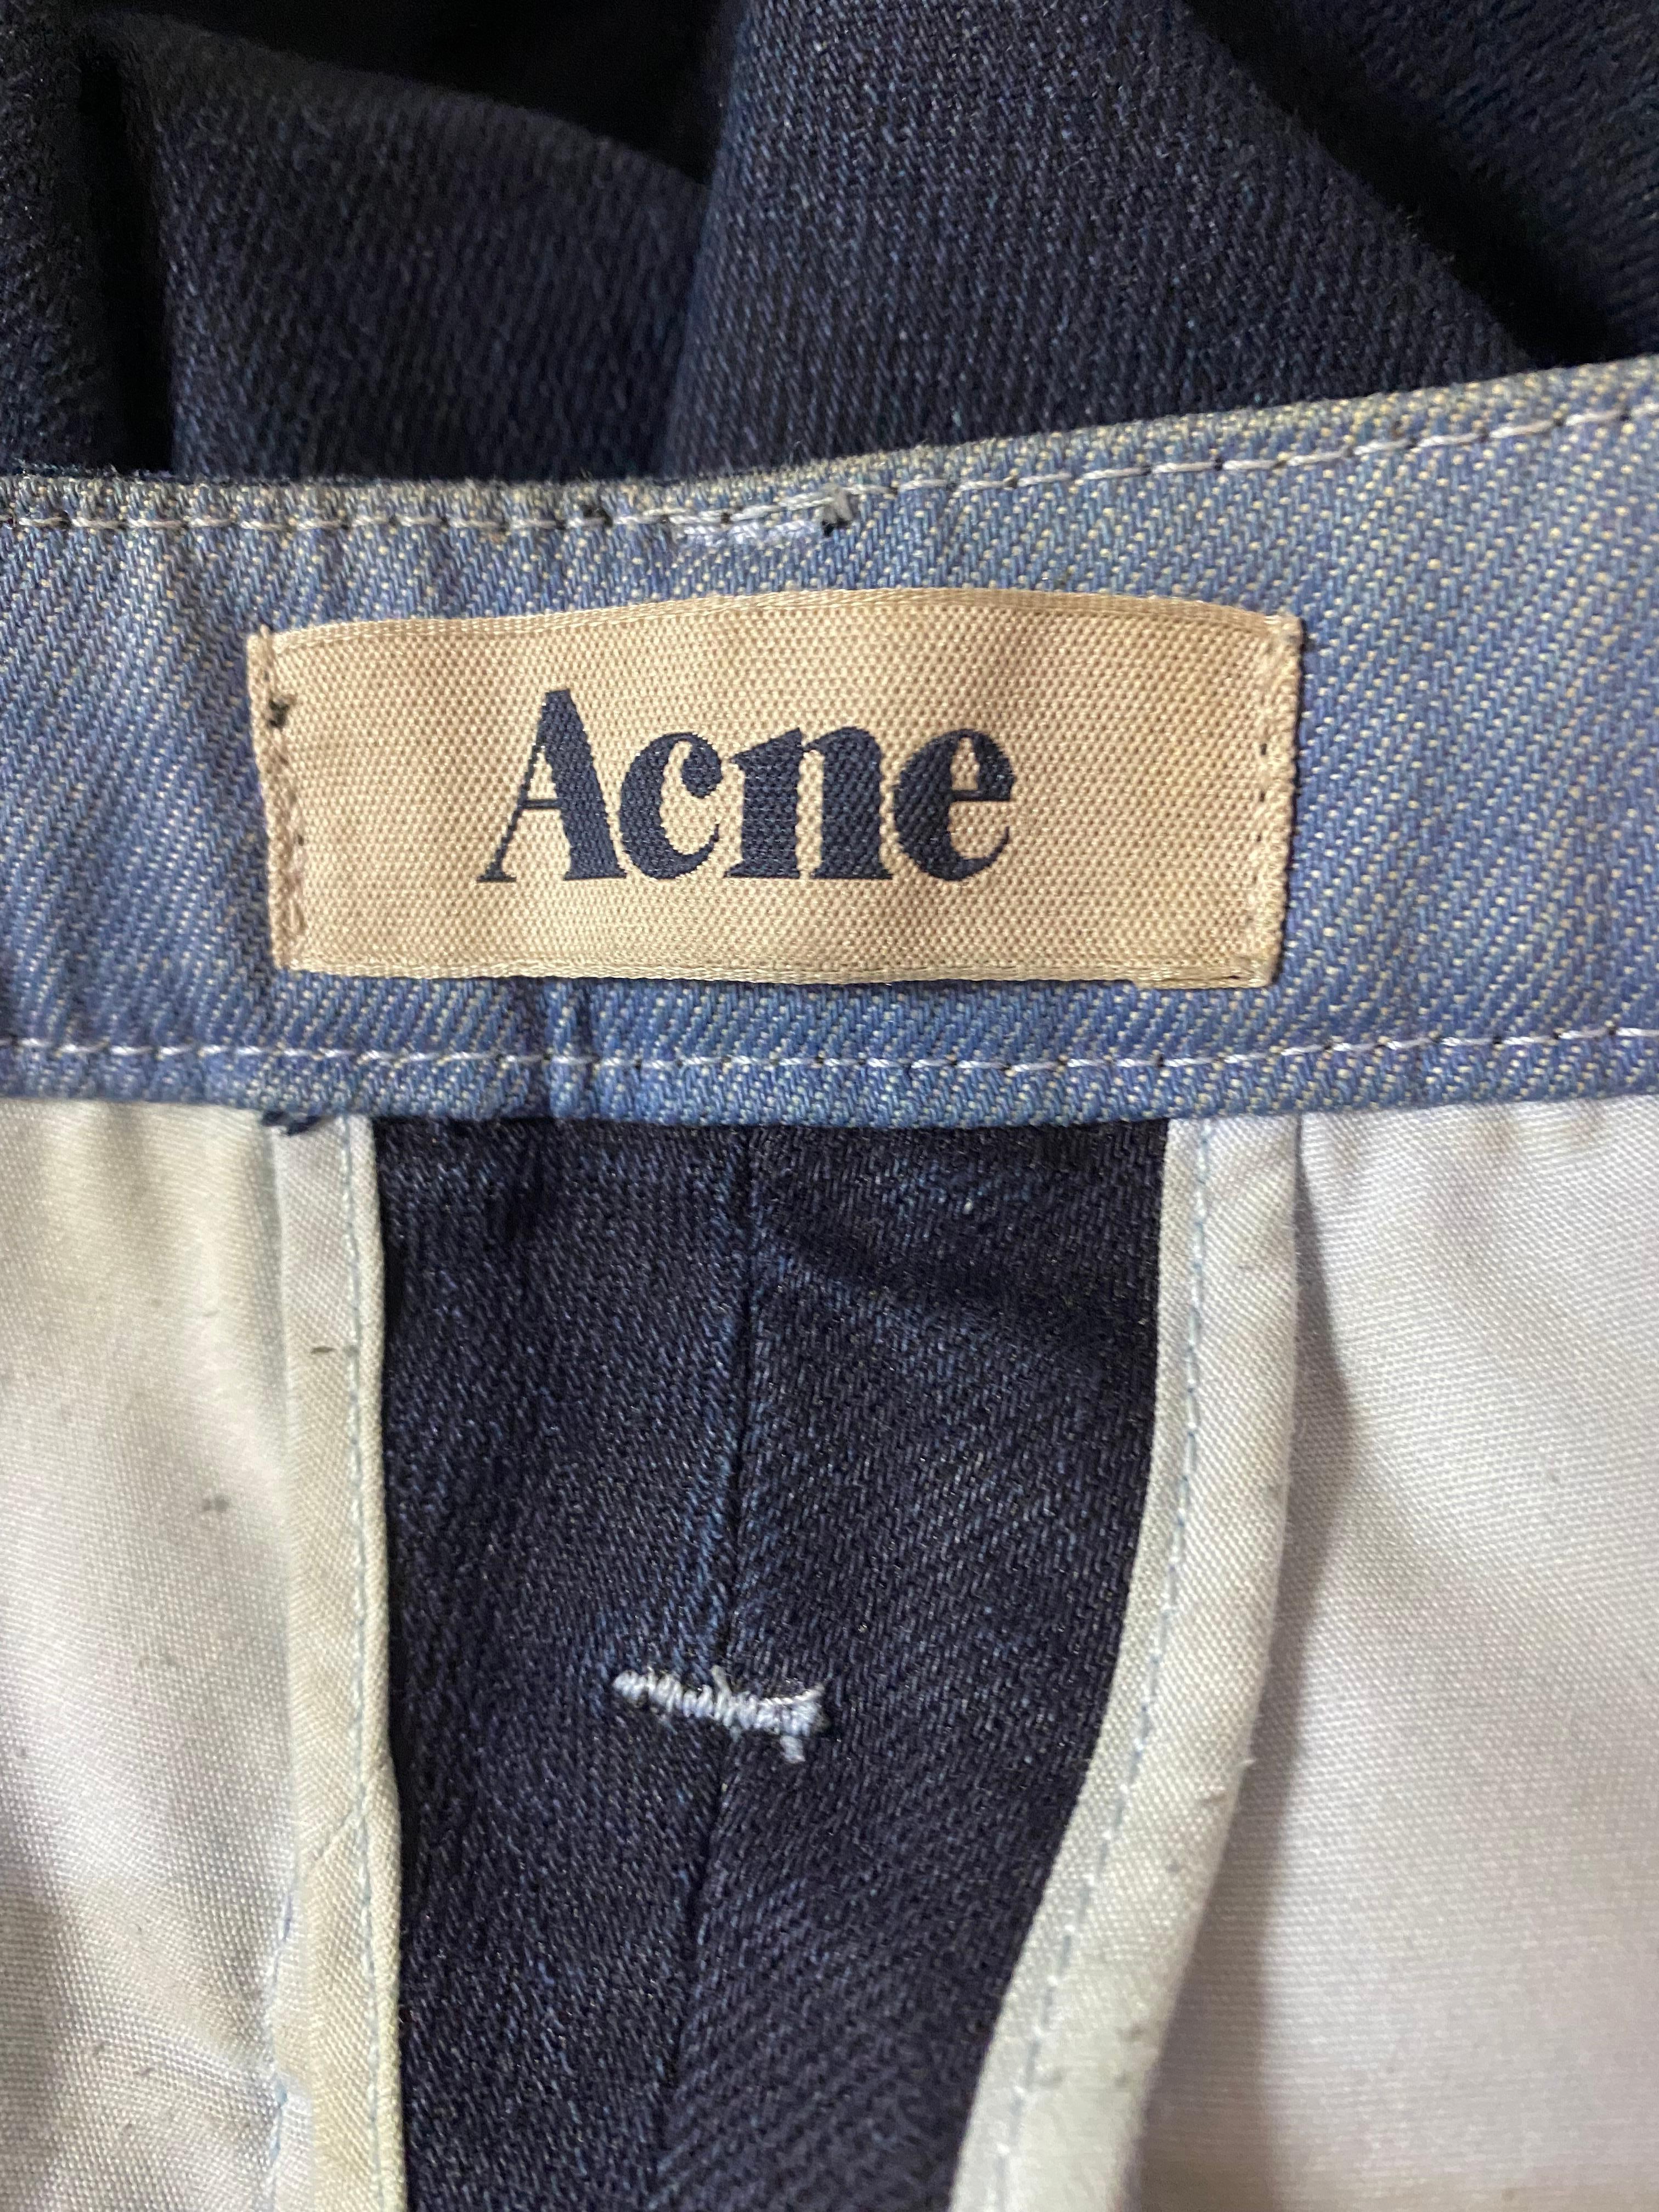 Acne Joy Sharp Blue Denim Jeans Pants, Size 25/32 For Sale 1